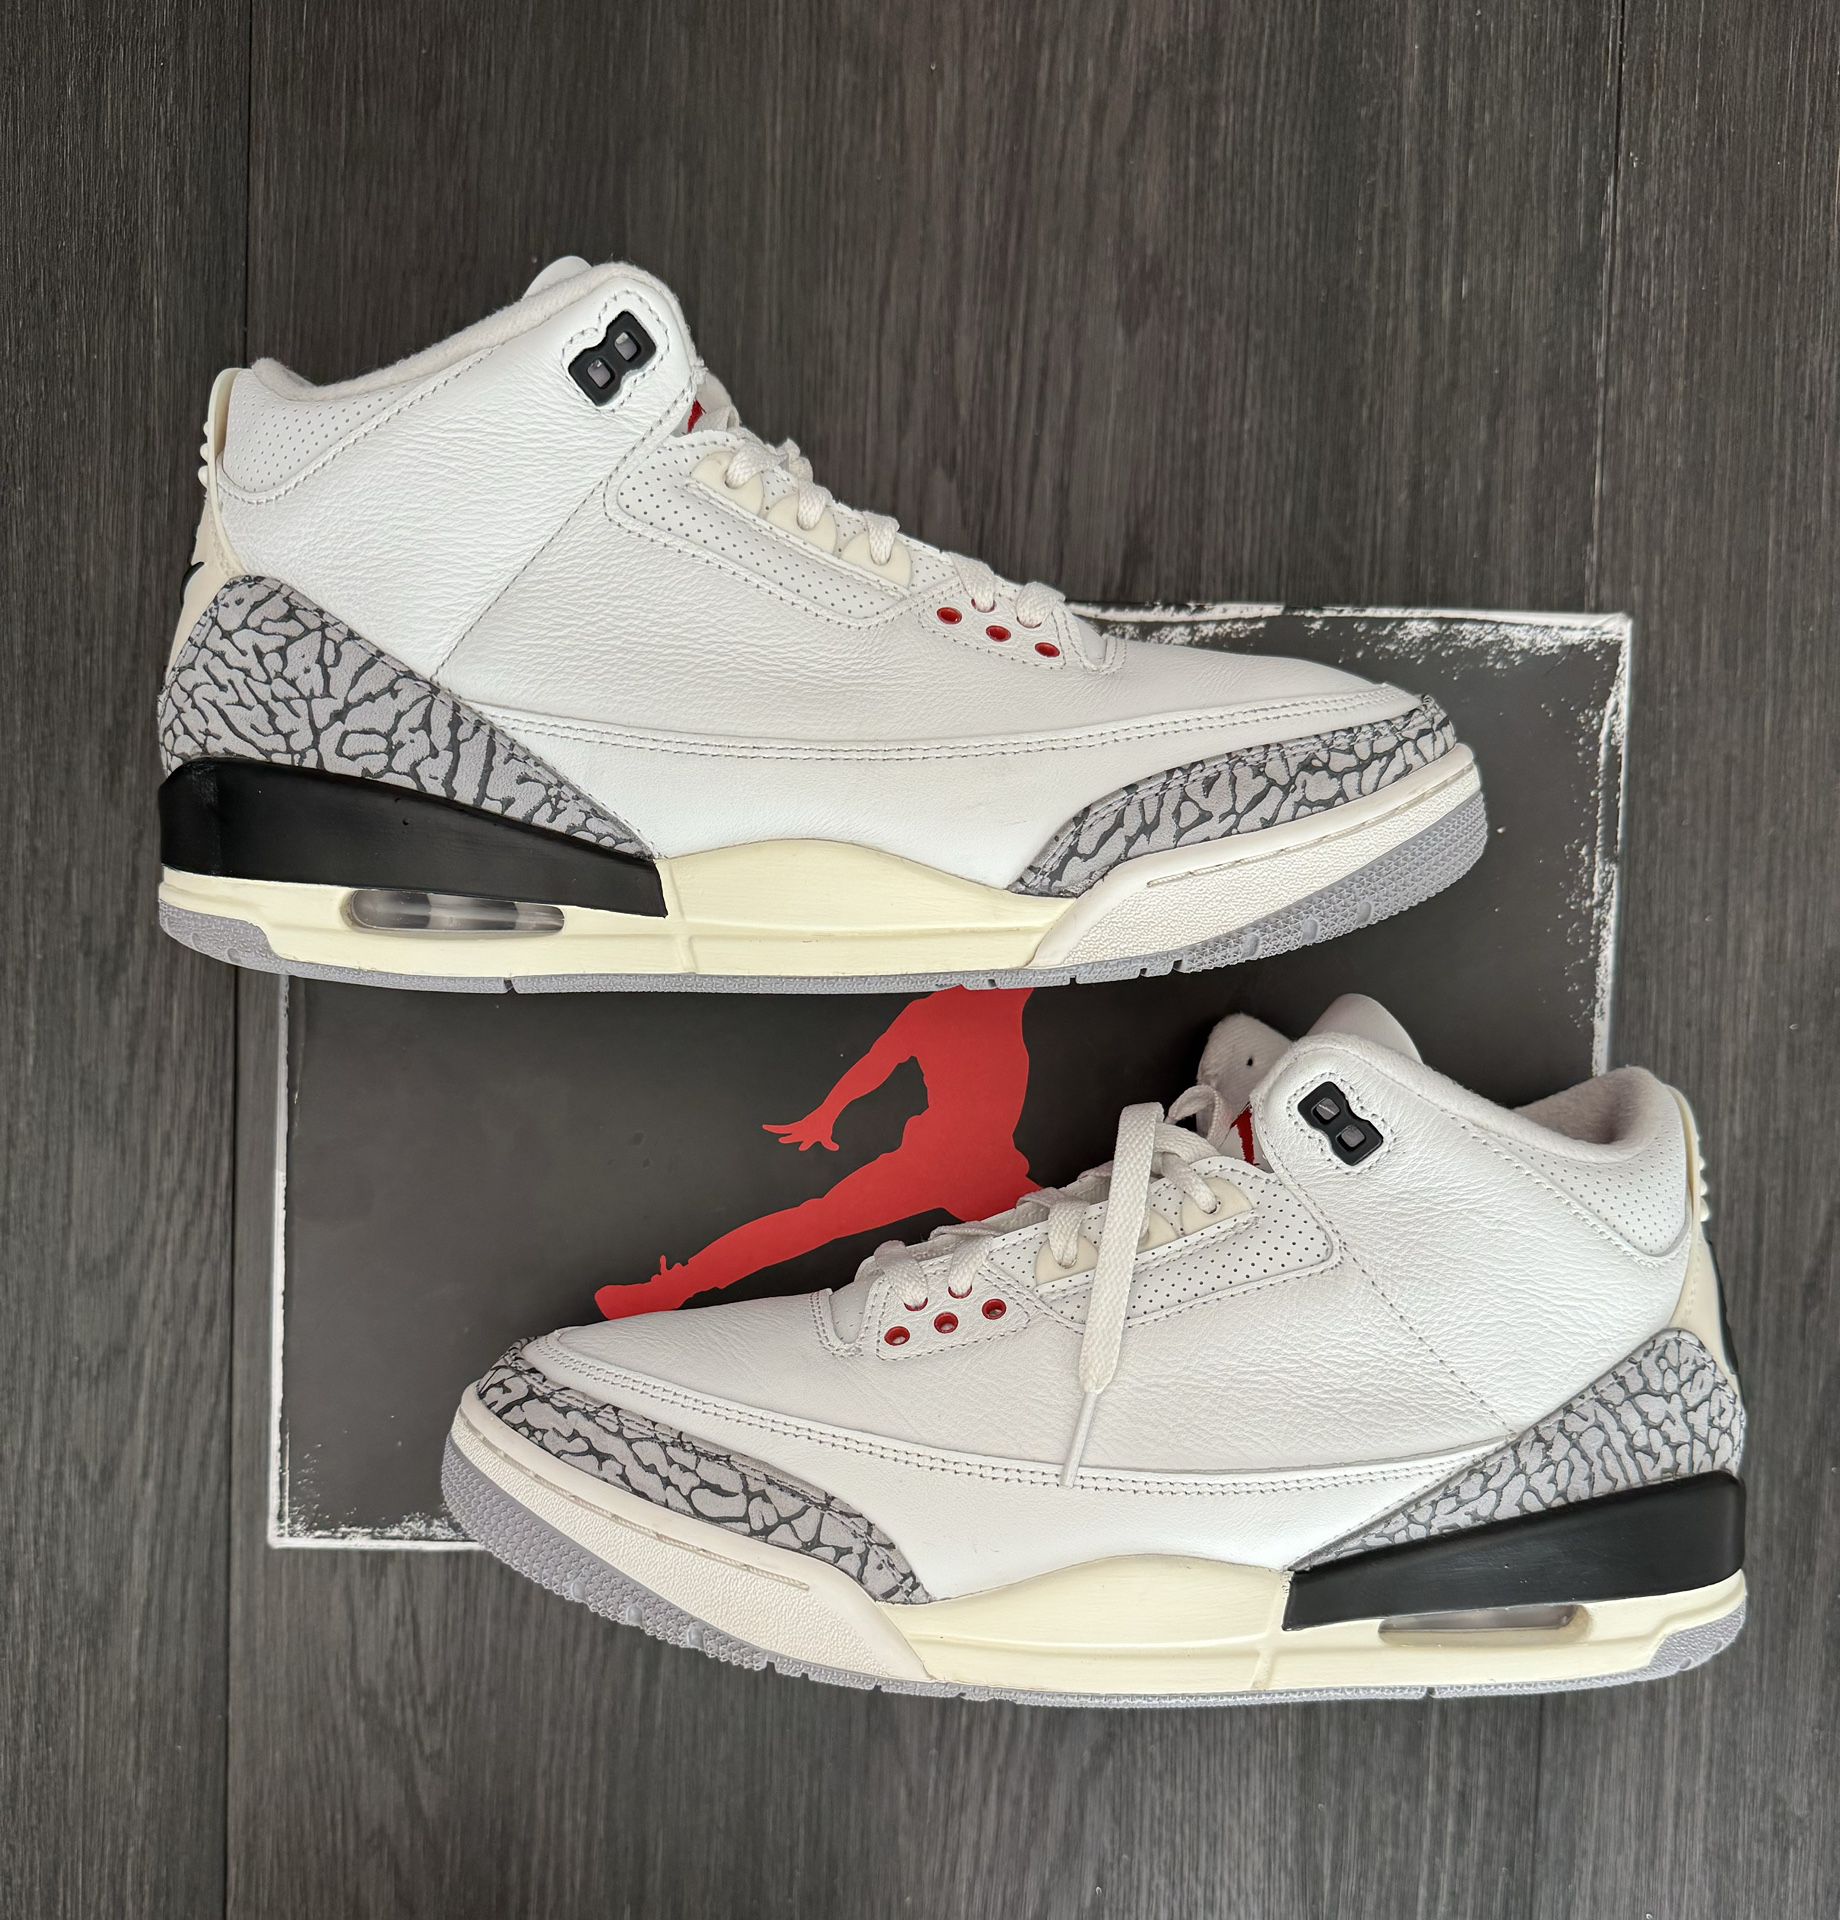 Jordan 3 “reimagined” Size 12 $285